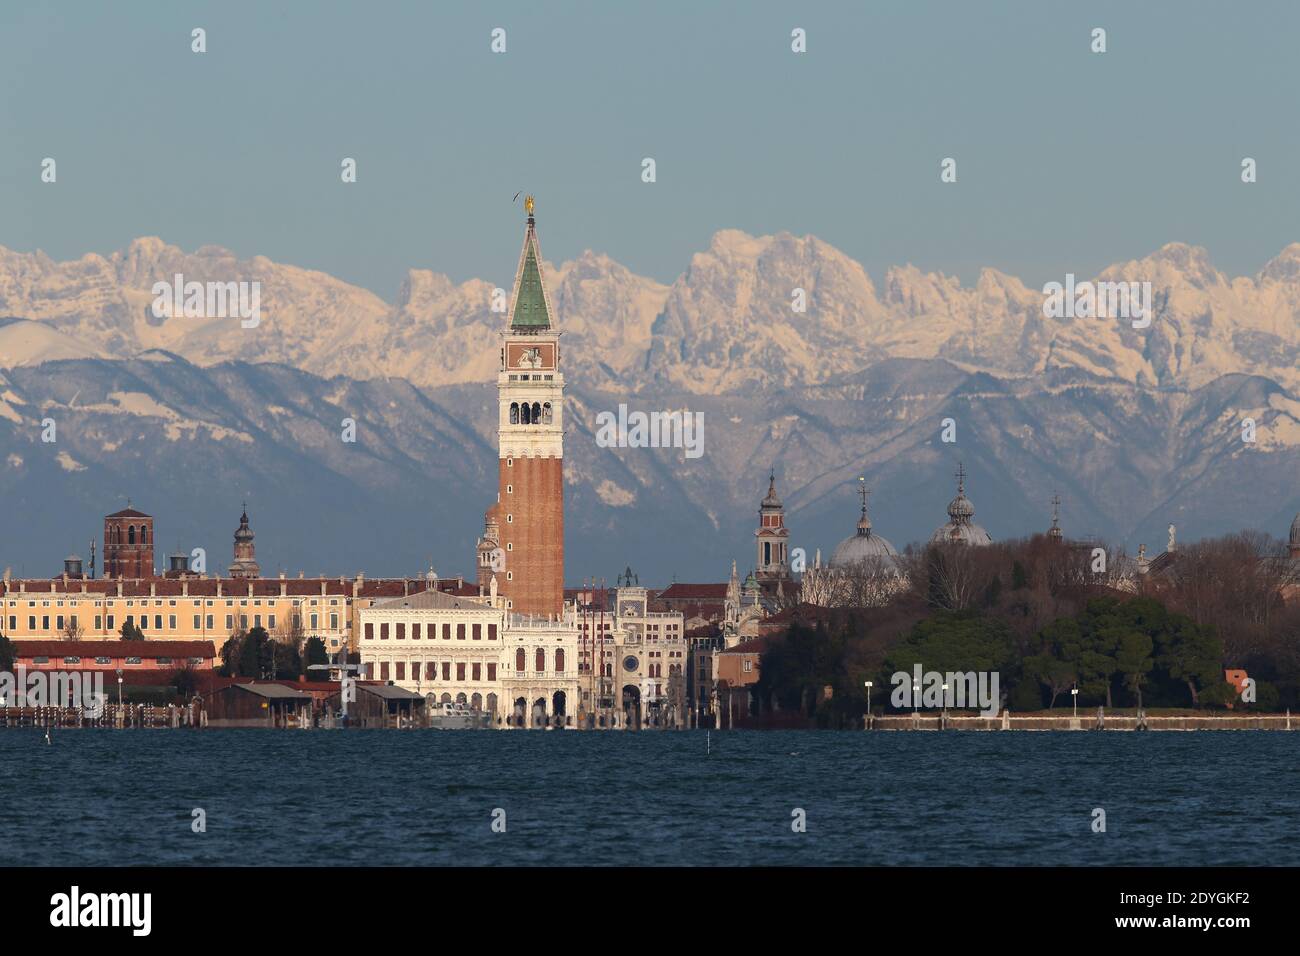 VENEZIA, ITALIA 26 DICEMBRE 2020: Dopo giorni di maltempo, si può assistere al fenomeno del 'drario' che è Venezia con lo sfondo delle Dolomiti Foto Stock